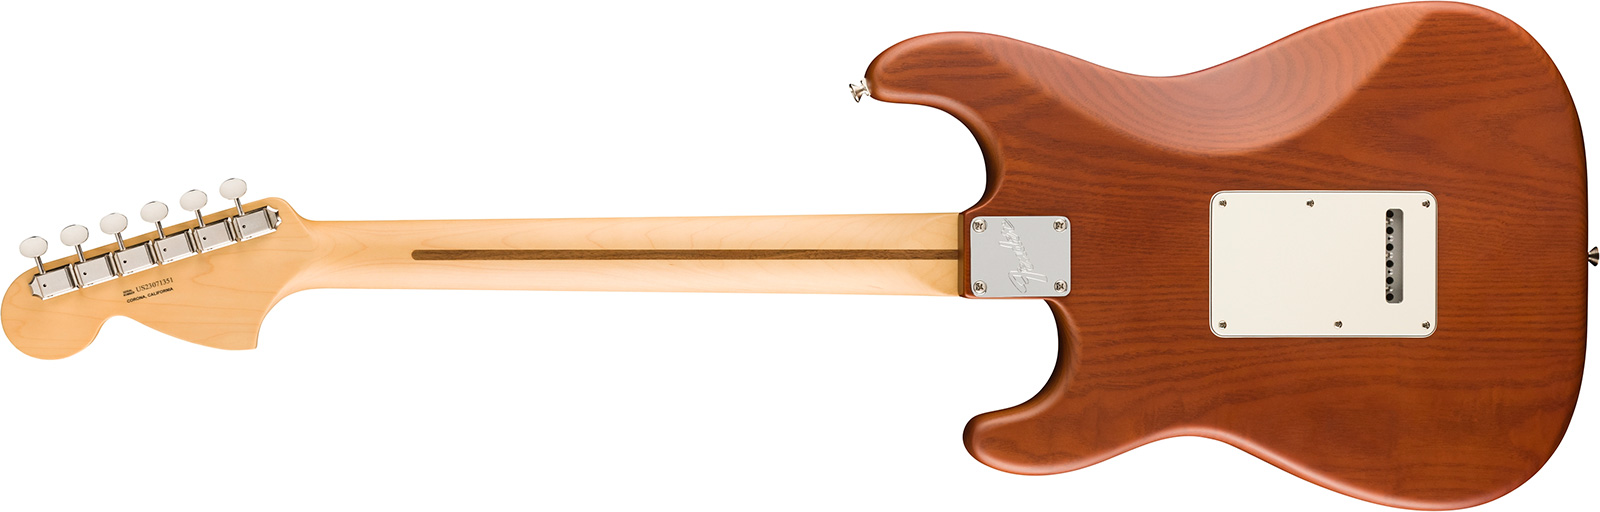 Fender Strat American Timber Performer Fsr Ltd Usa 3s Rw - Mocha - Guitare Électrique Forme Str - Variation 1